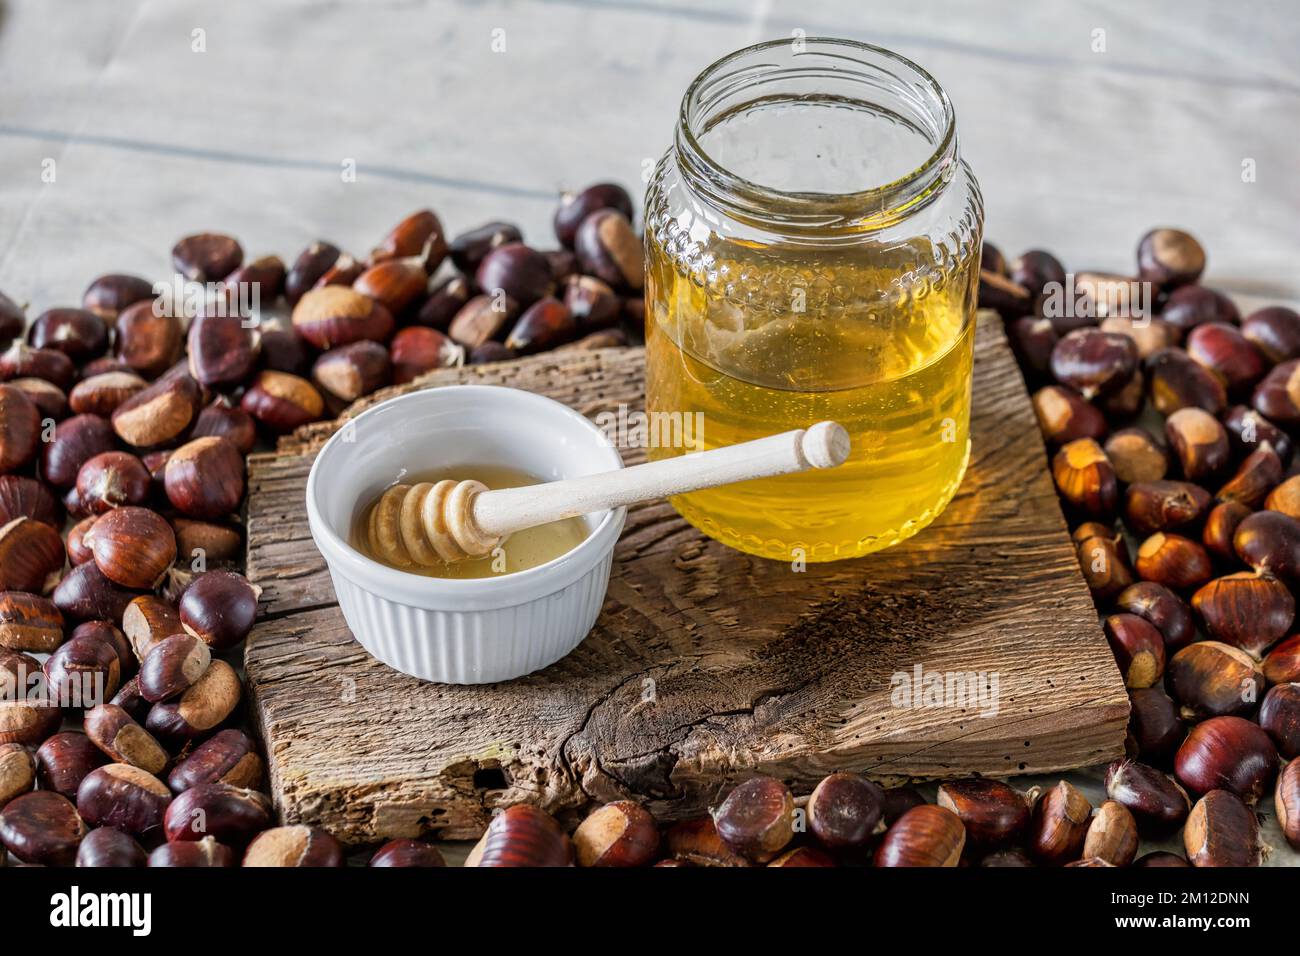 jarre de miel d'abeille avec petite tasse et un balancier de miel sur panneau en bois antique, atmosphère d'automne avec châtaignes Banque D'Images